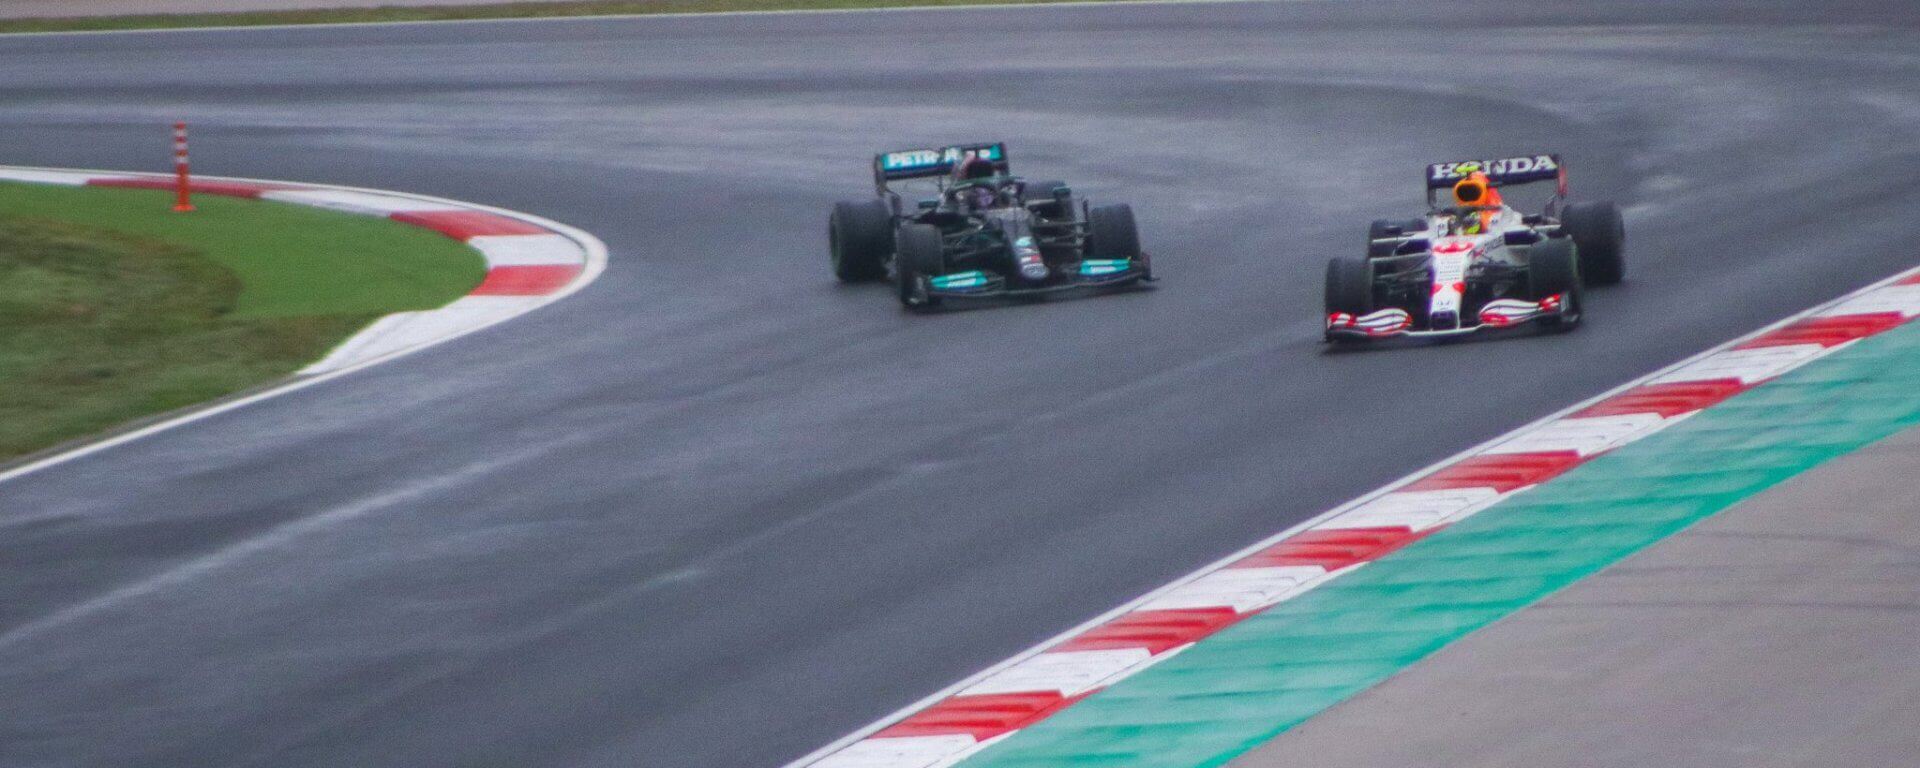 Lewis Hamilton and Sergio Perez battle in Turkey 2021